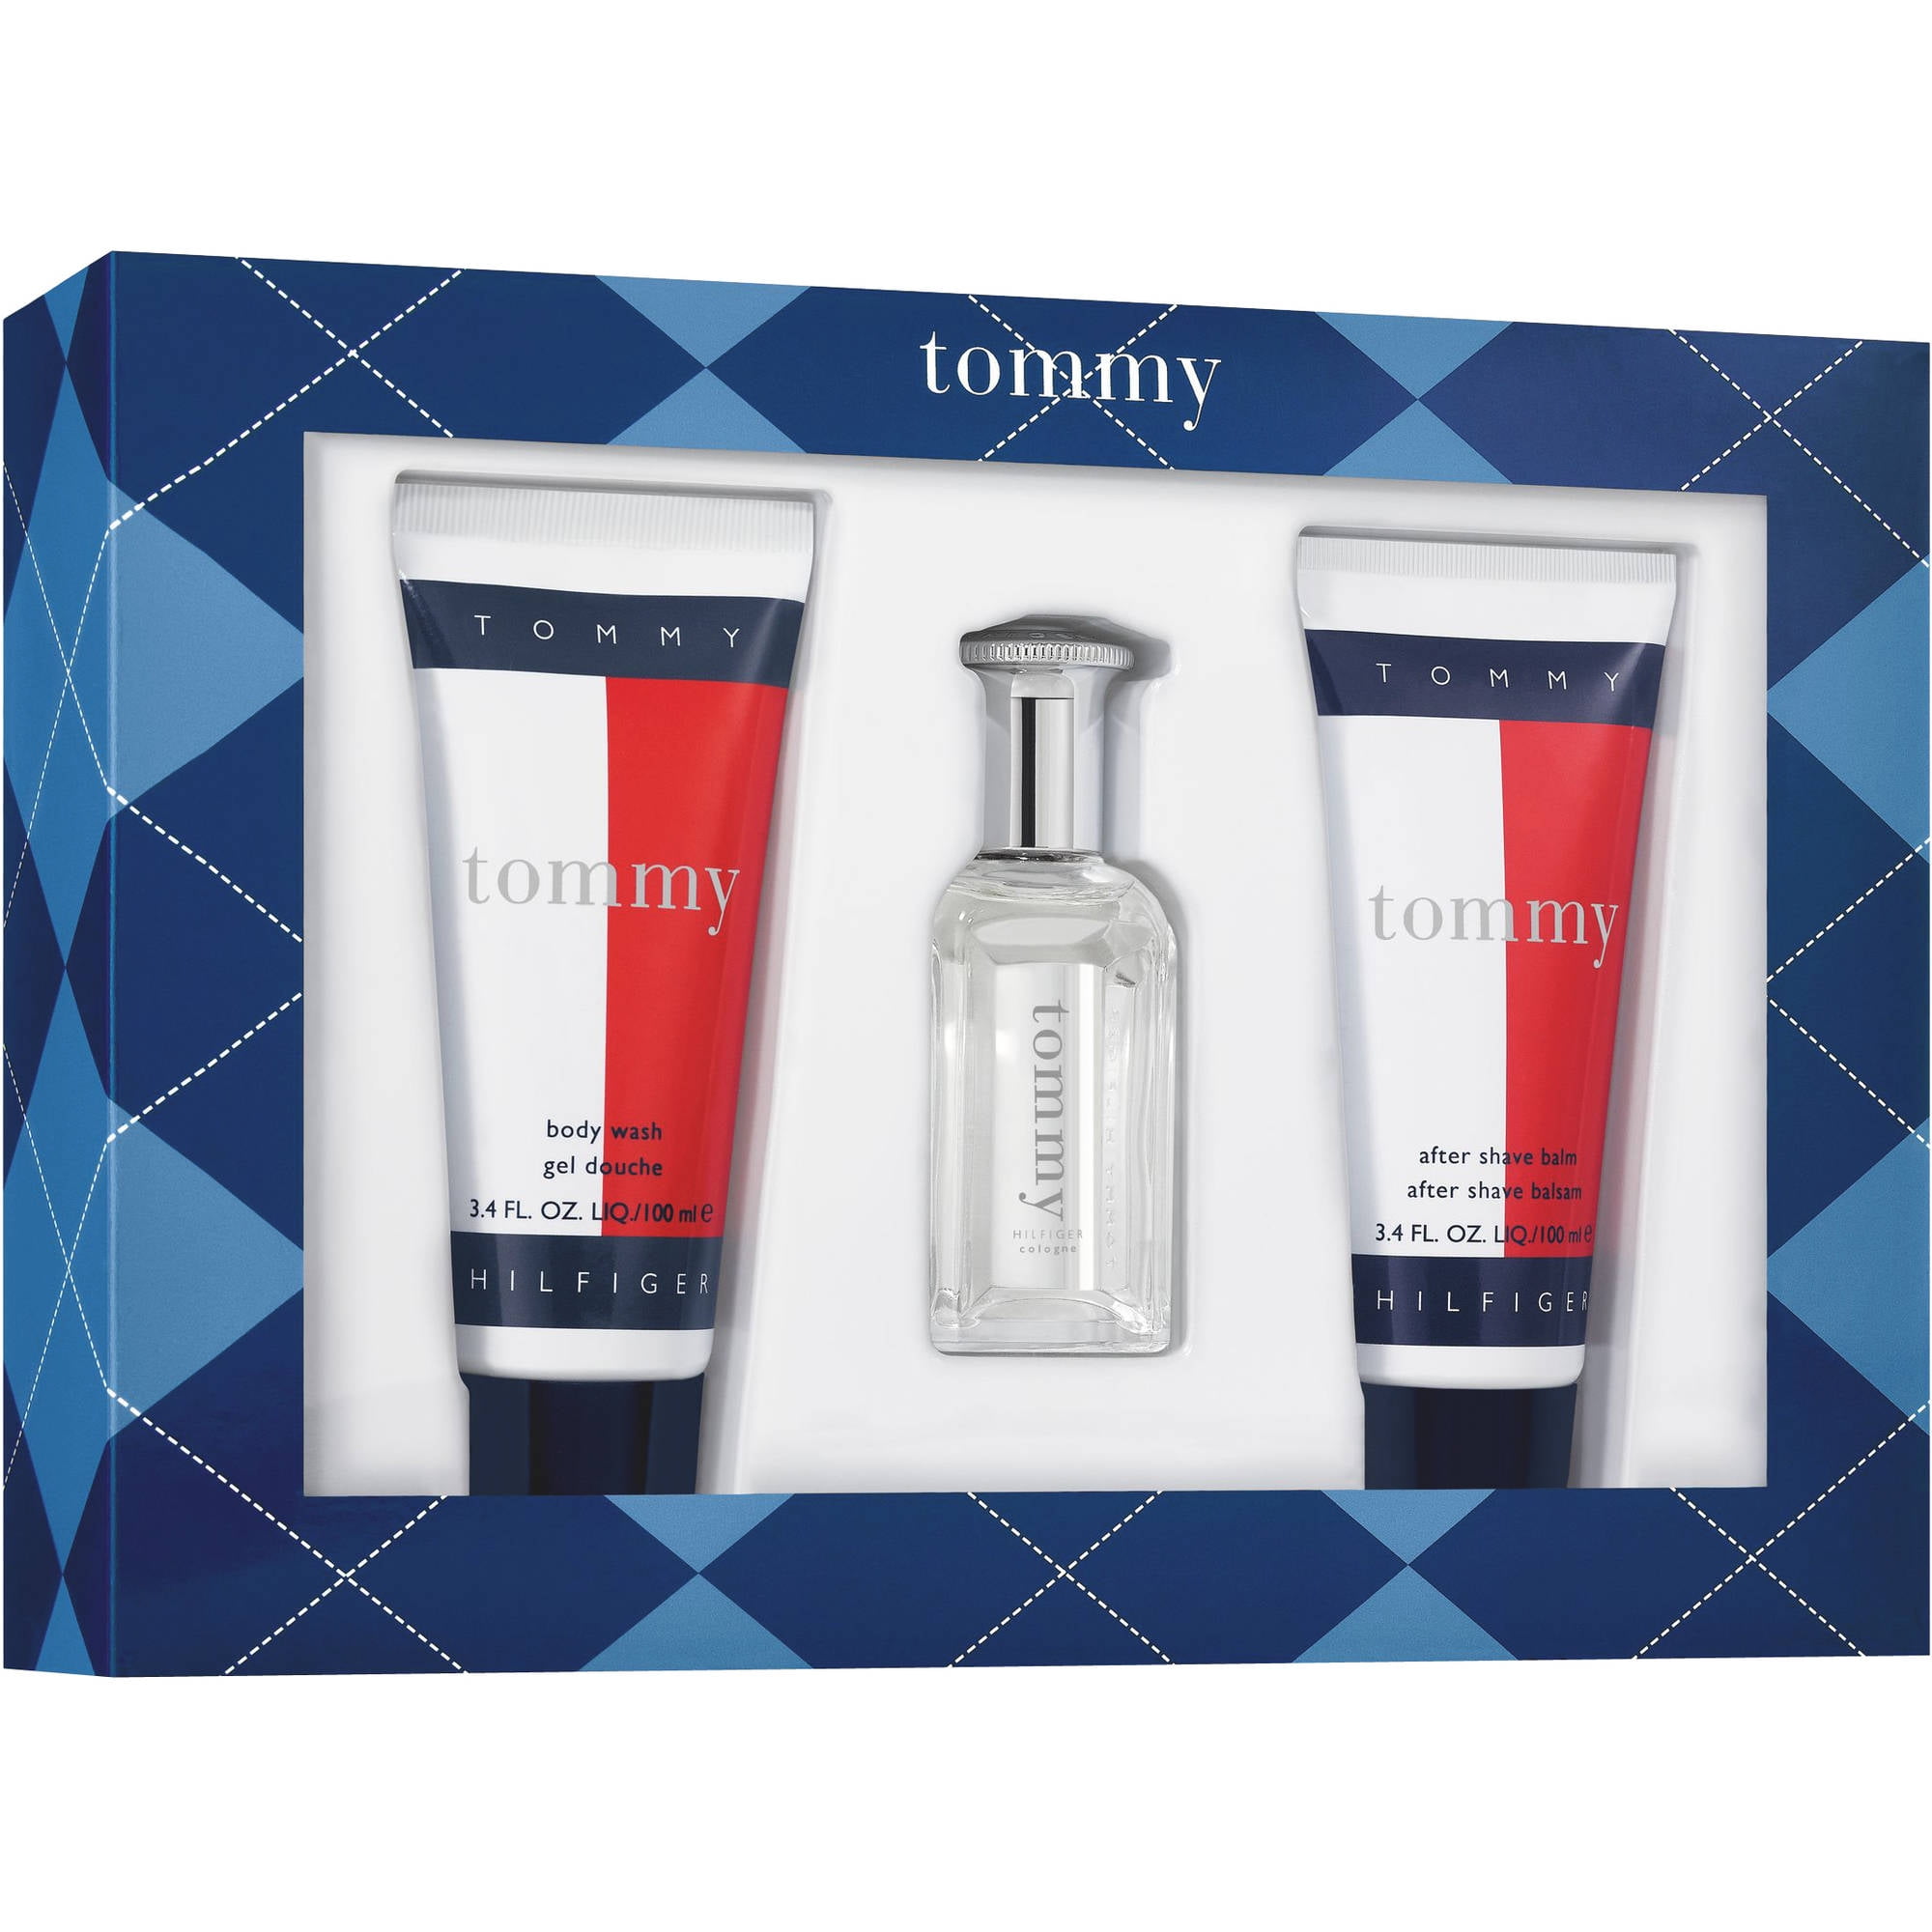 tommy hilfiger aftershave gift set